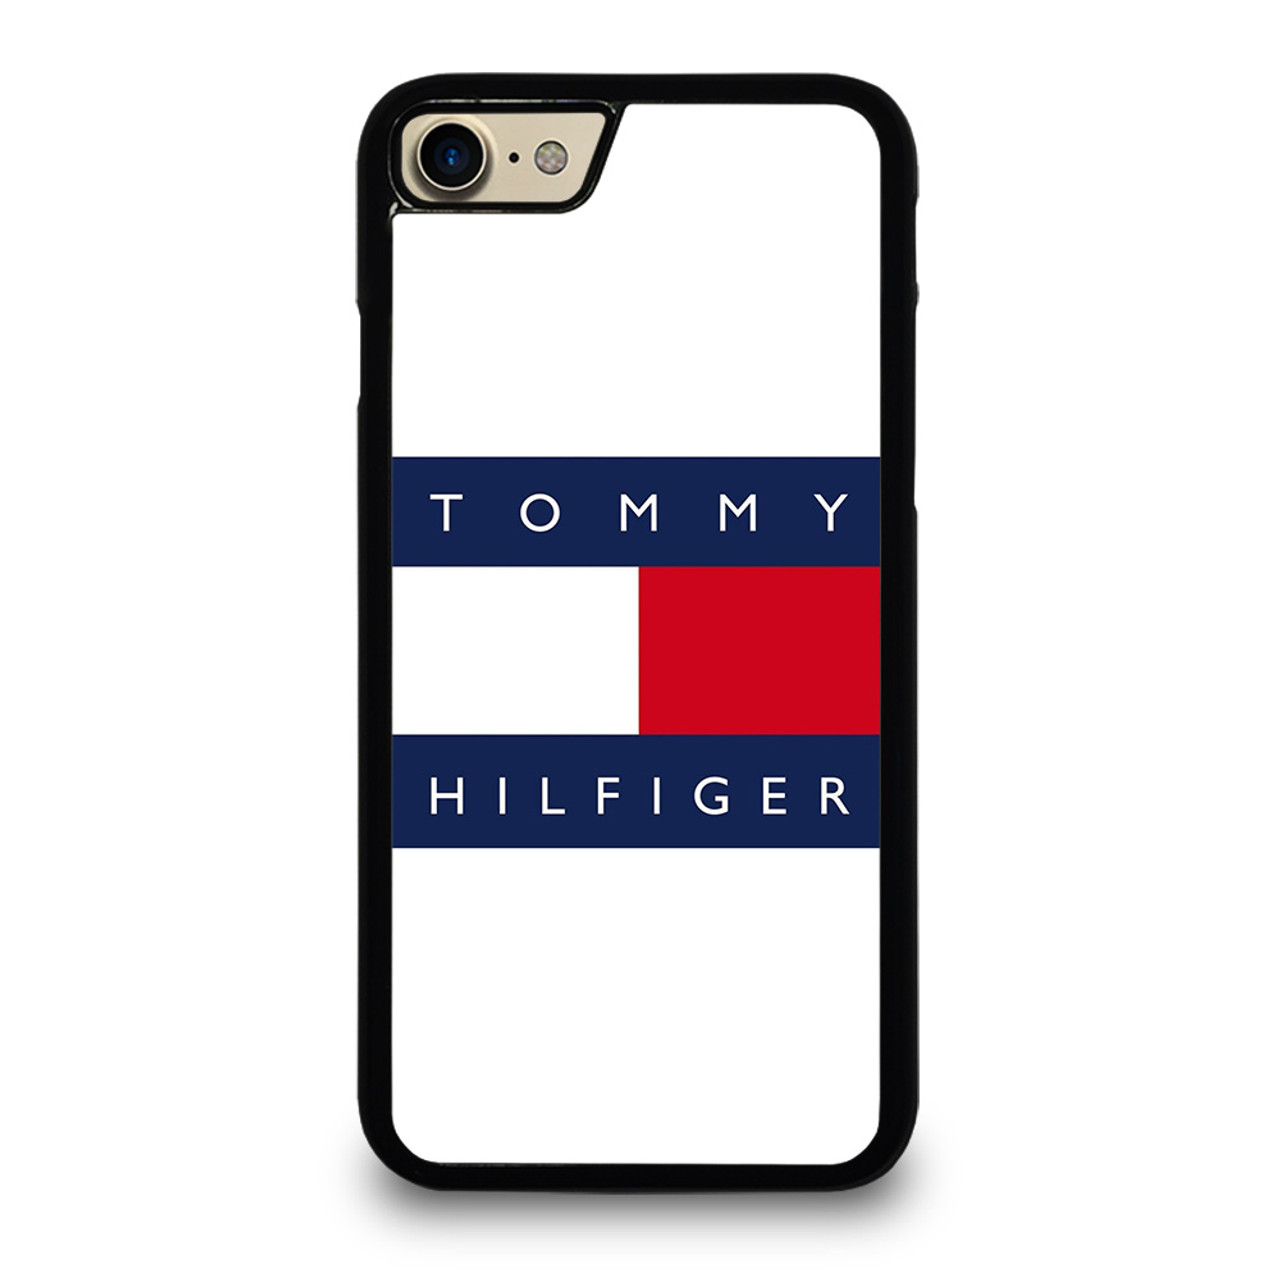 TOMMY HILFIGER LOGO Case Cover